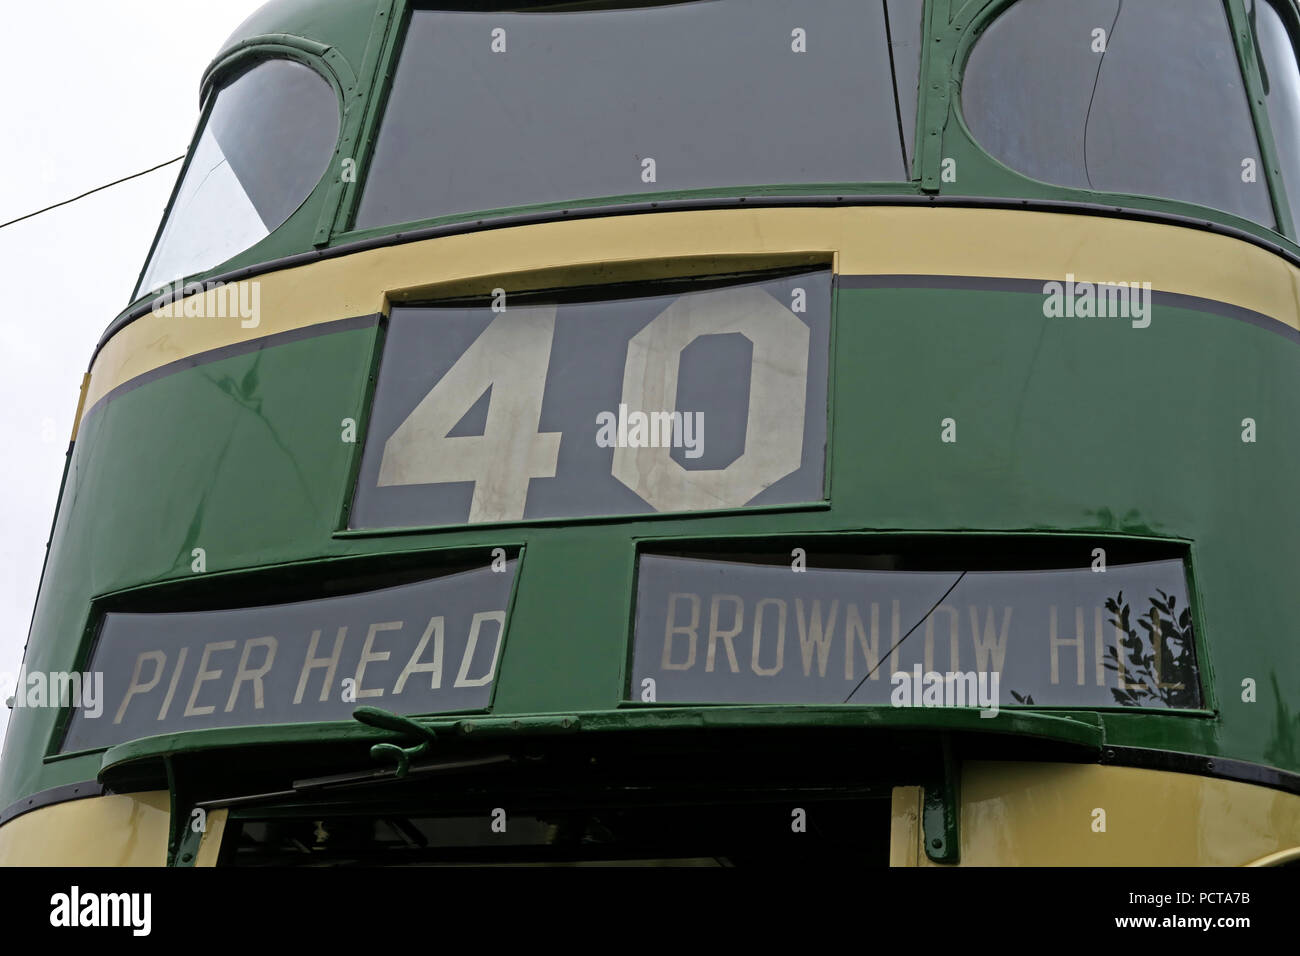 Wirral öffentliche Straßenbahn, Grün Creme Pierhead Brownlow hill Straßenbahn, Merseyside, North West England, Großbritannien Stockfoto